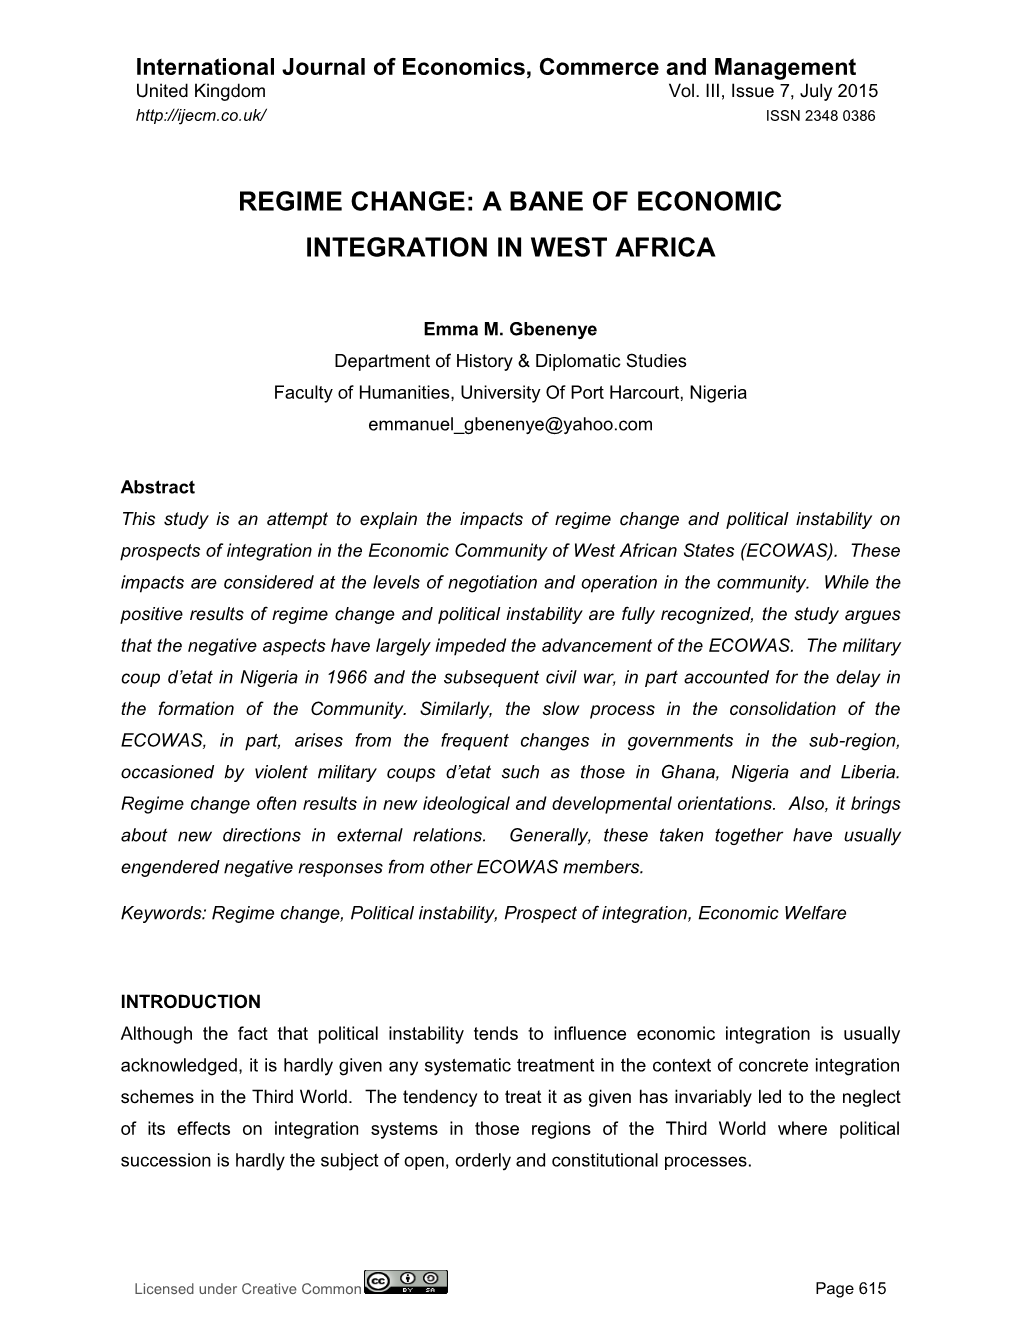 Regime Change: a Bane of Economic Integration in West Africa